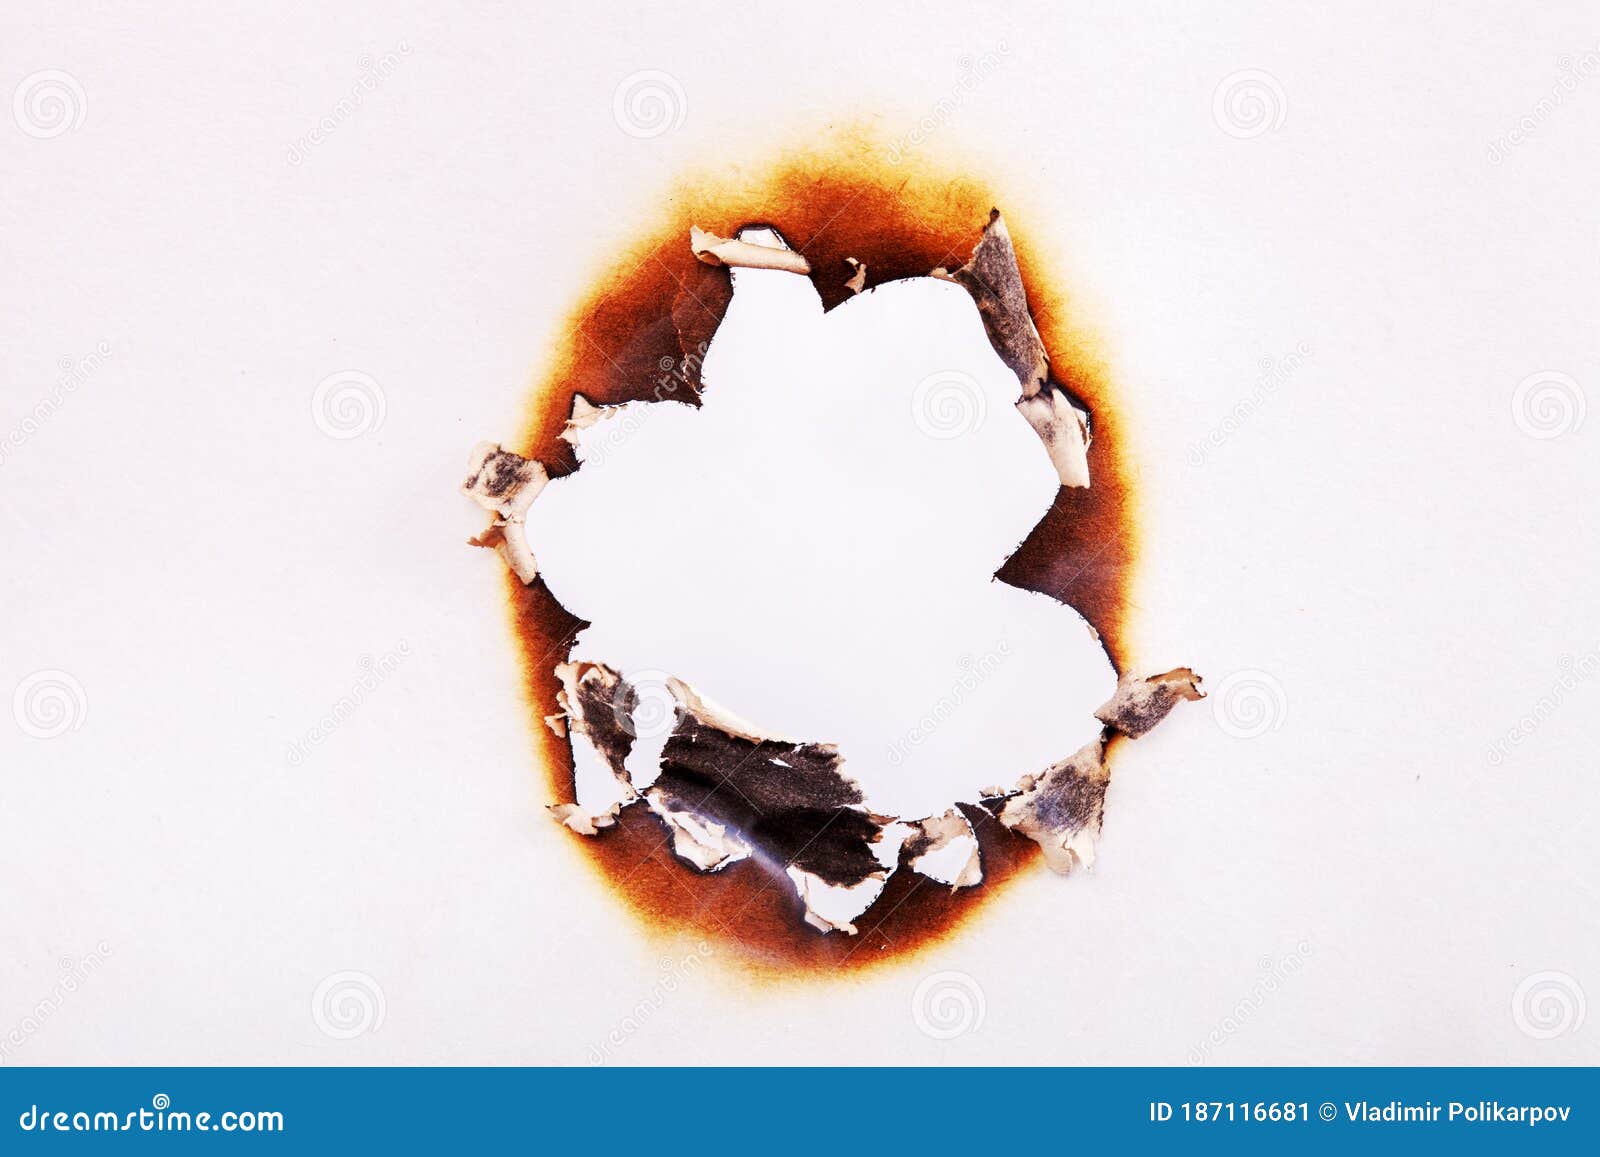 图片素材 : 燃烧, 破坏, 火焰, 纸 2672x4000 - - 1563483 - 素材中国, 高清壁纸 - PxHere摄影图库